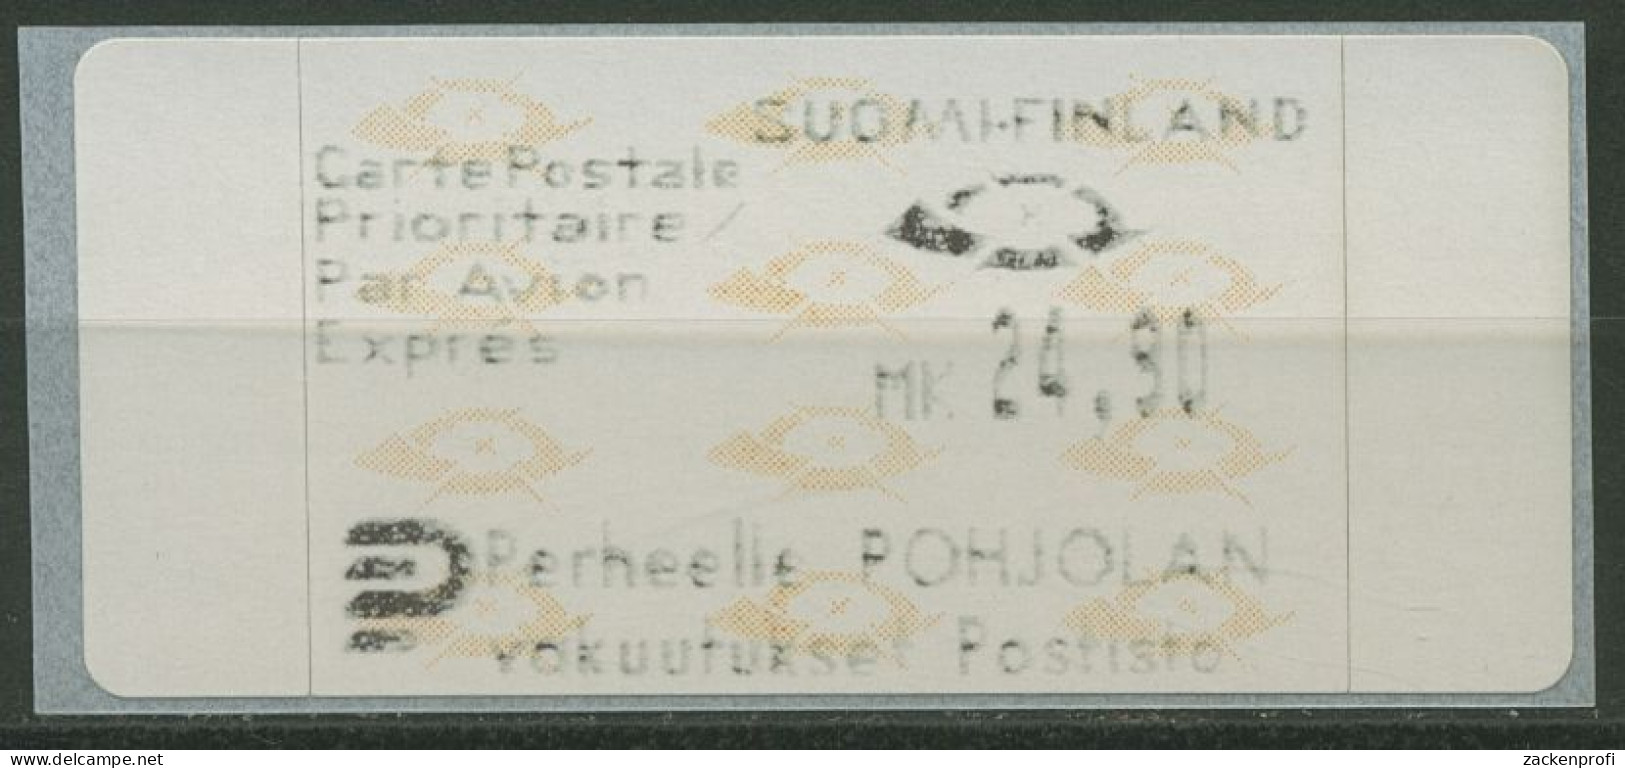 Finnland Automatenmarken 1992 Posthörner Einzelwert ATM 12.3 Z4 Postfrisch - Automaatzegels [ATM]